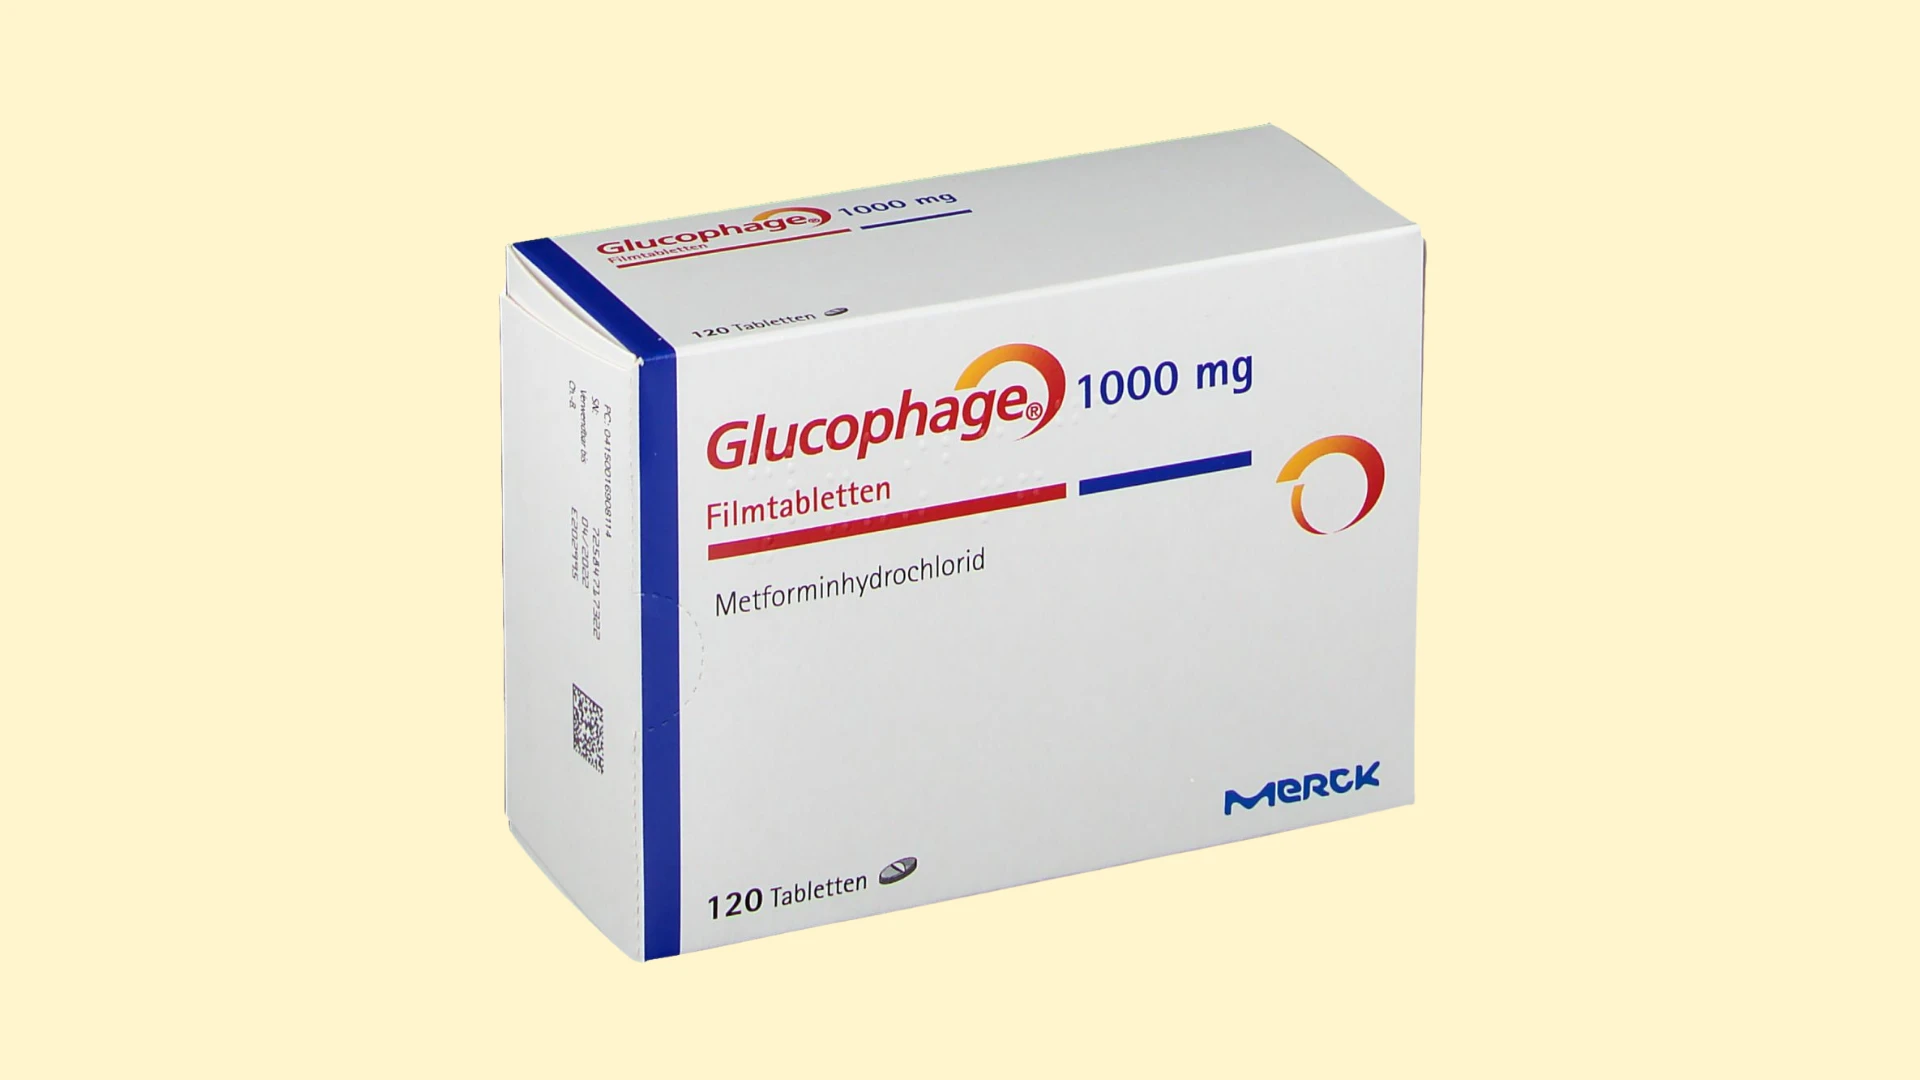 Glucophage 1000 mg - E-recepta - recepta online z konsultacją | cena, dawkowanie, przeciwwskazania